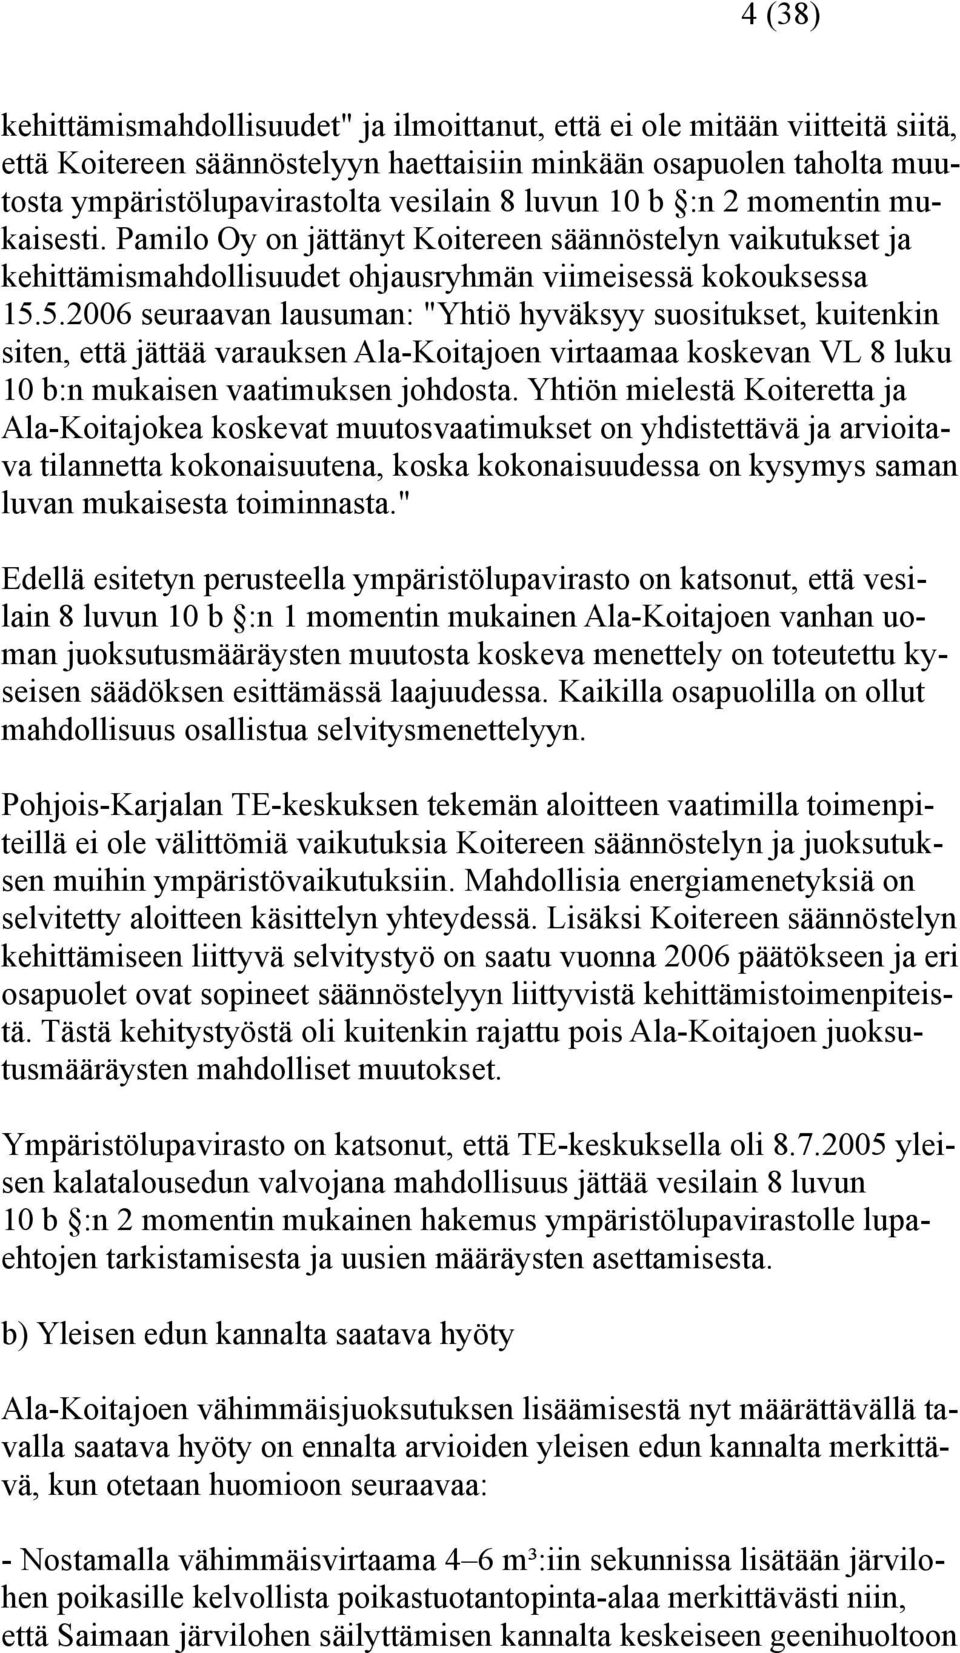 5.2006 seuraavan lausuman: "Yhtiö hyväksyy suositukset, kuitenkin siten, että jättää varauksen Ala-Koitajoen virtaamaa koskevan VL 8 luku 10 b:n mukaisen vaatimuksen johdosta.